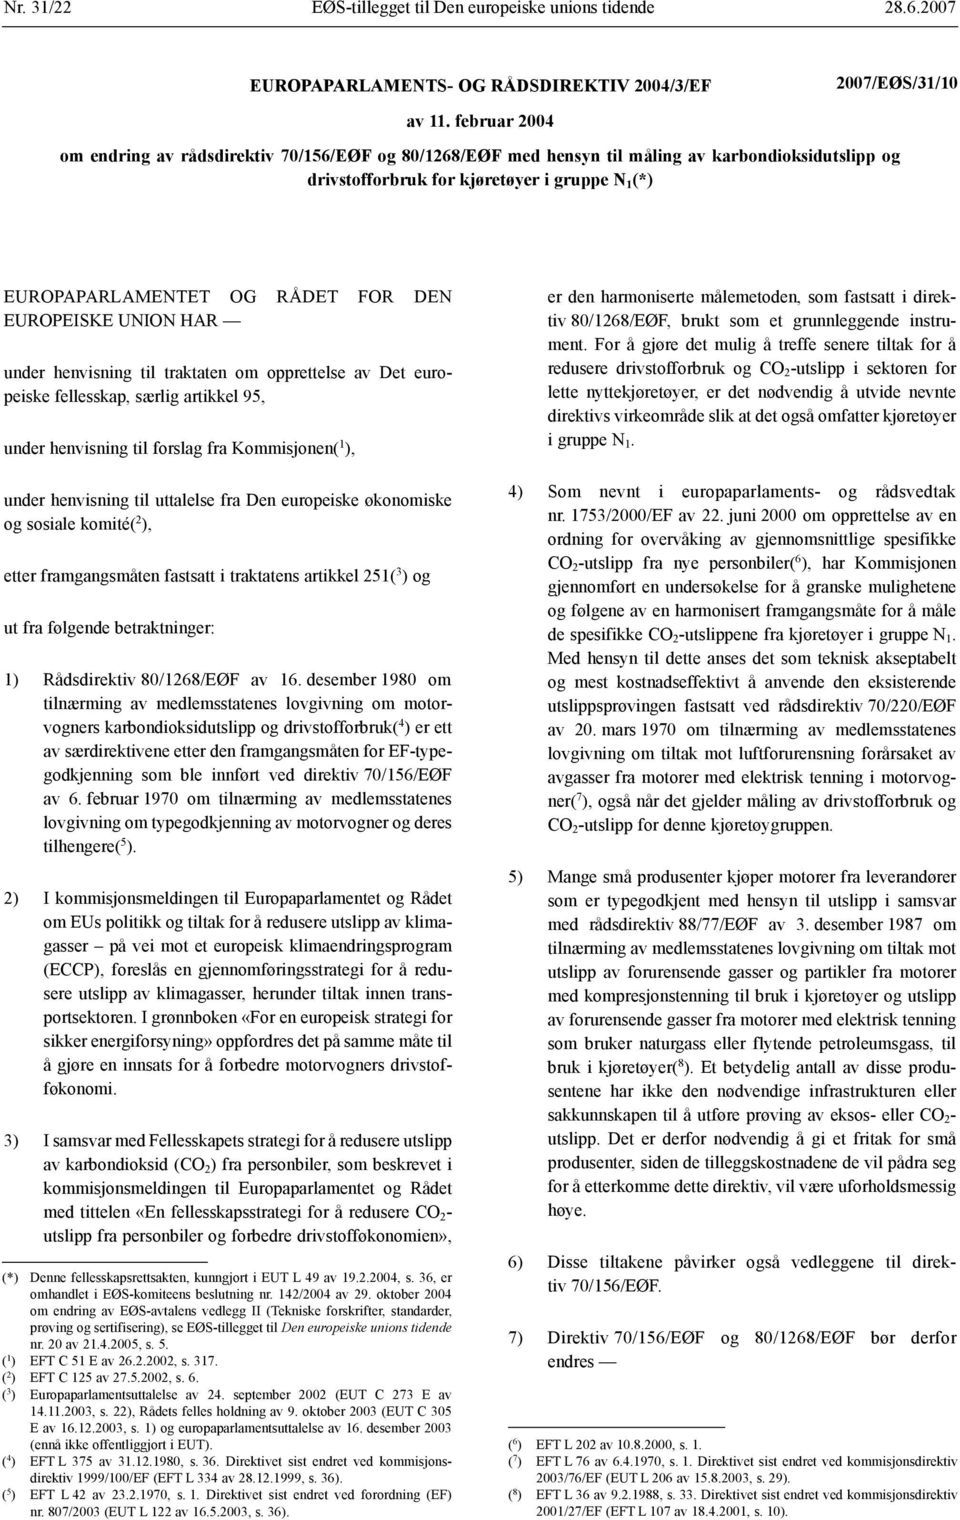 EUROPEISKE UNION HAR under henvisning til traktaten om opprettelse av Det europeiske fellesskap, særlig artikkel 95, under henvisning til forslag fra Kommisjonen( 1 ), under henvisning til uttalelse